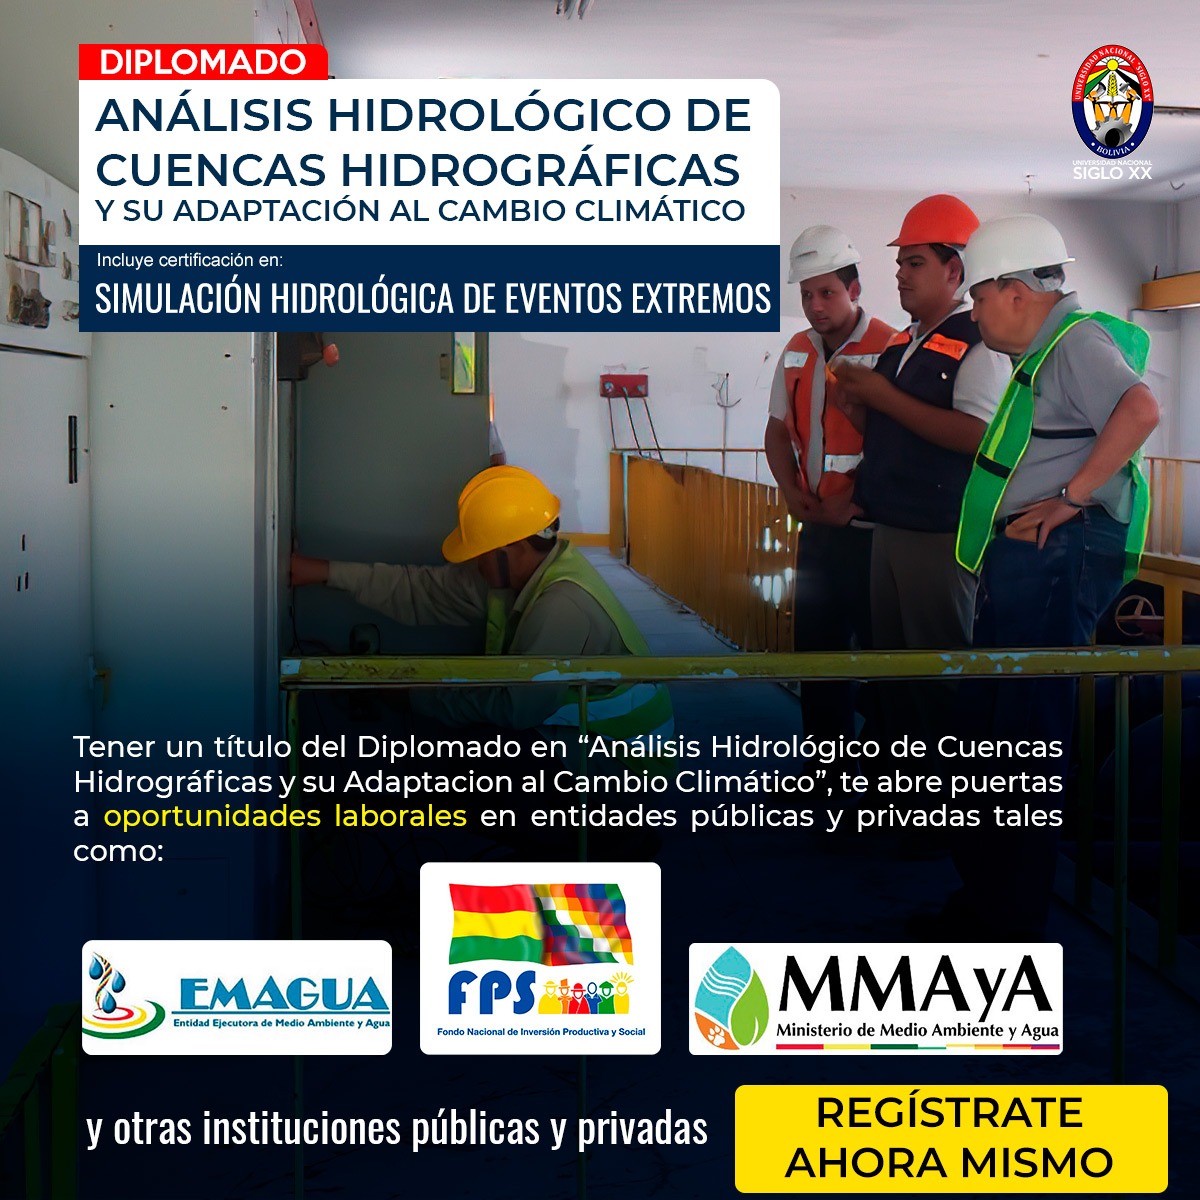 Diplomado  DE ANALISIS HIDROLÓGICO DE CUENCAS HIDROGRÁFICAS Y SU ADAPTACION AL CAMBIO CLIMÁTICO